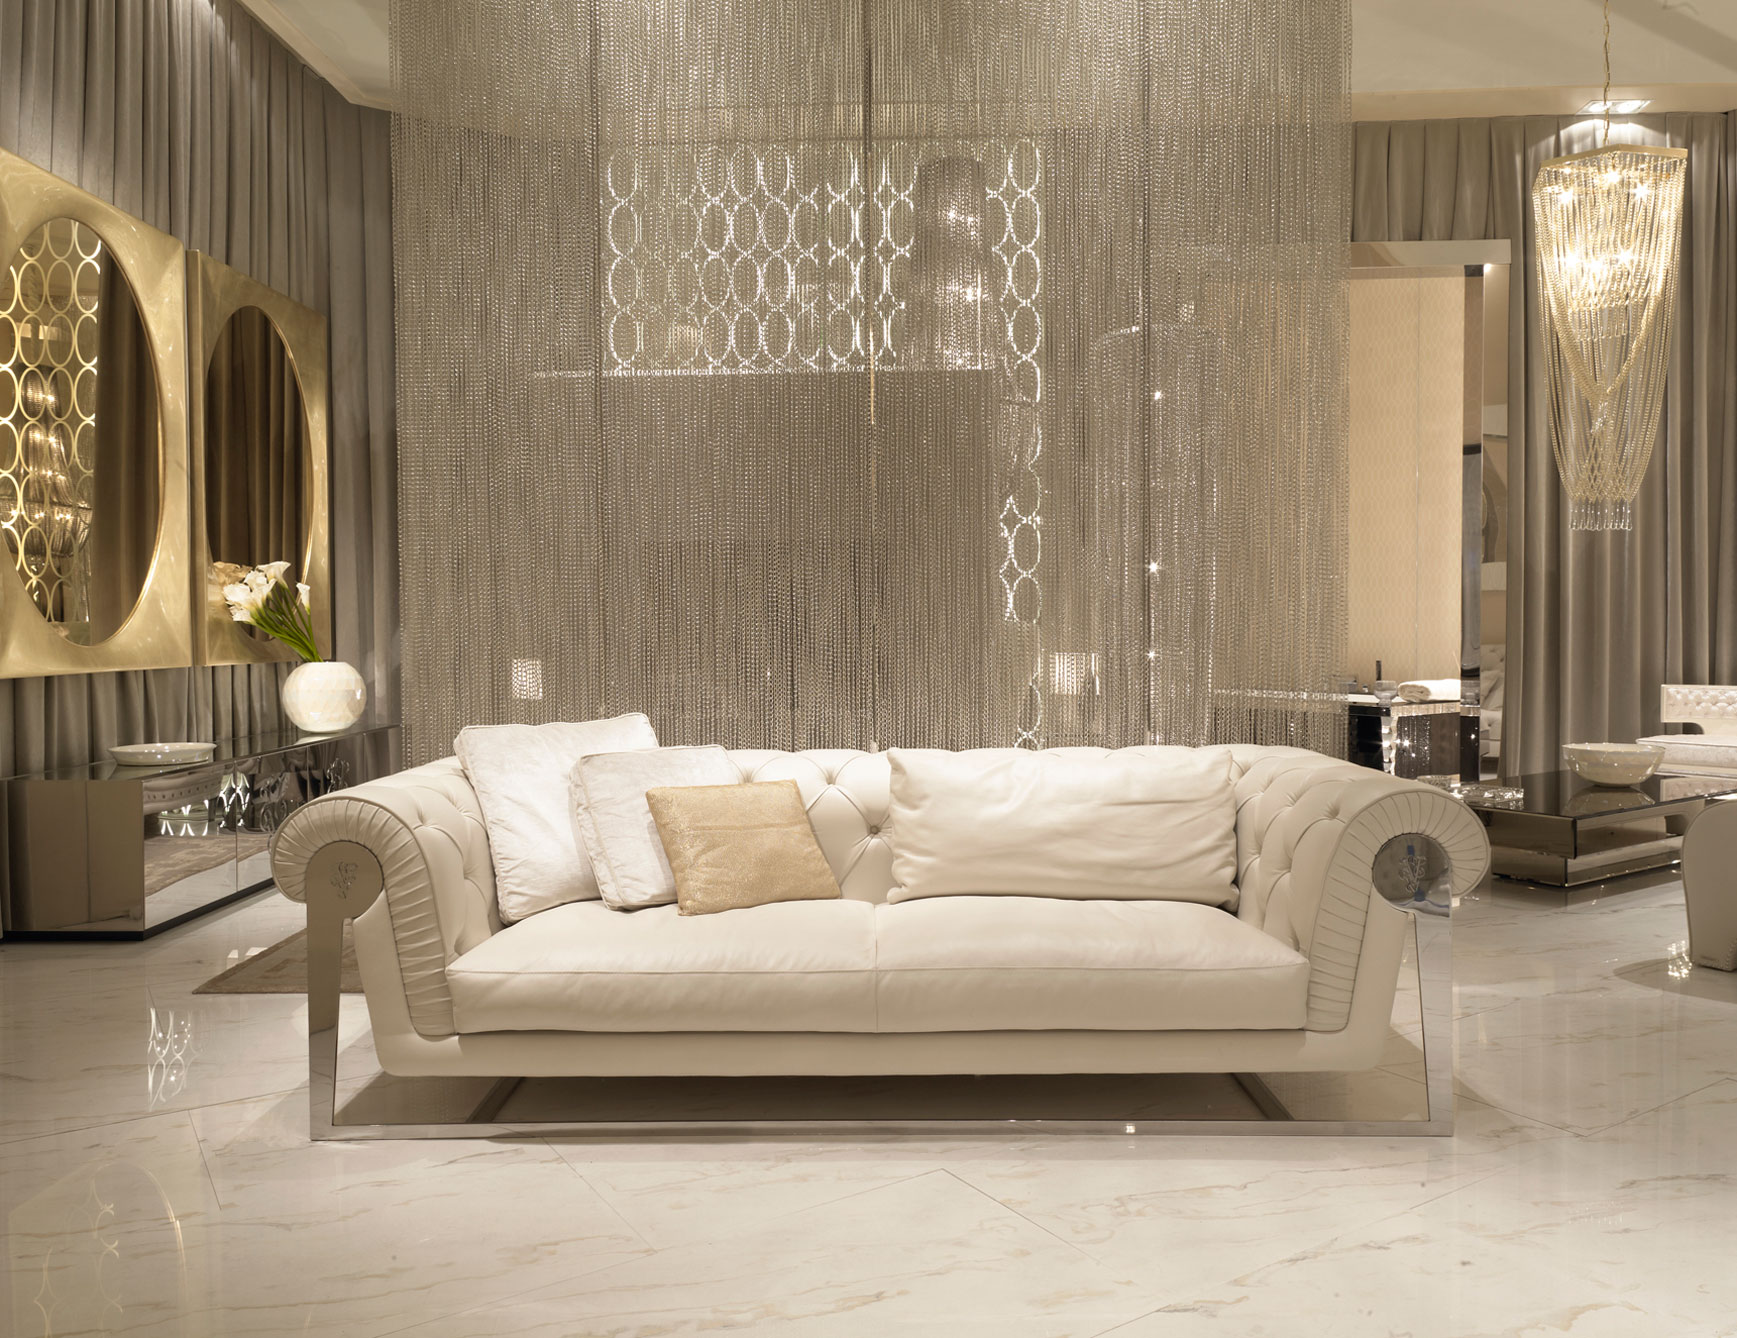 Sleek White Marble Floor Italian Sofas Shiny Gold Mirror